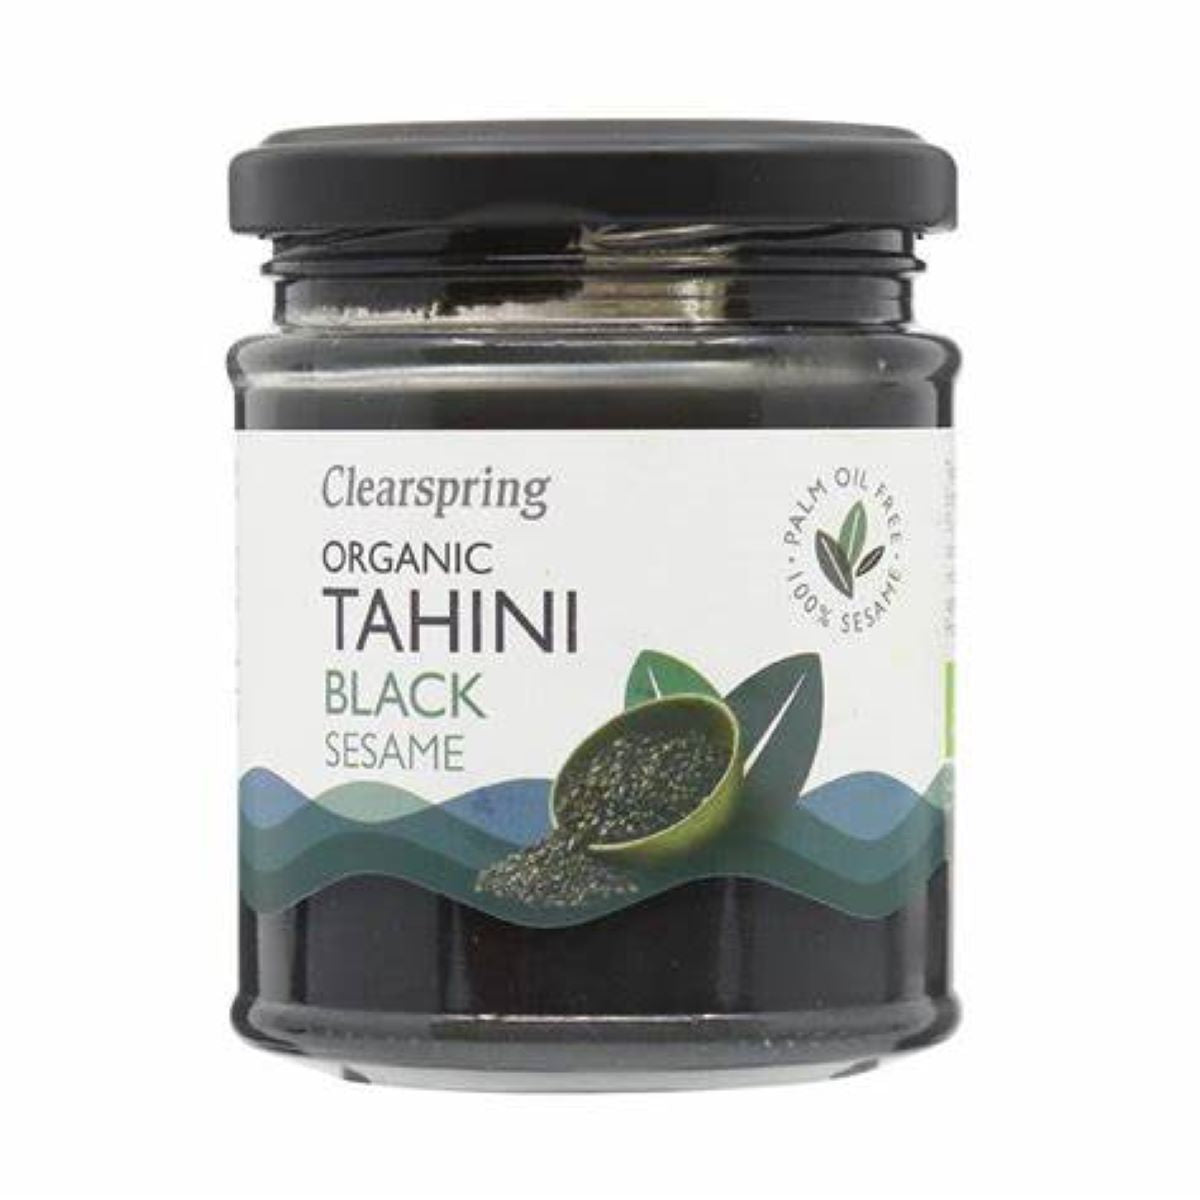 Clearspring Organic Tahini - Black Sesame 170g